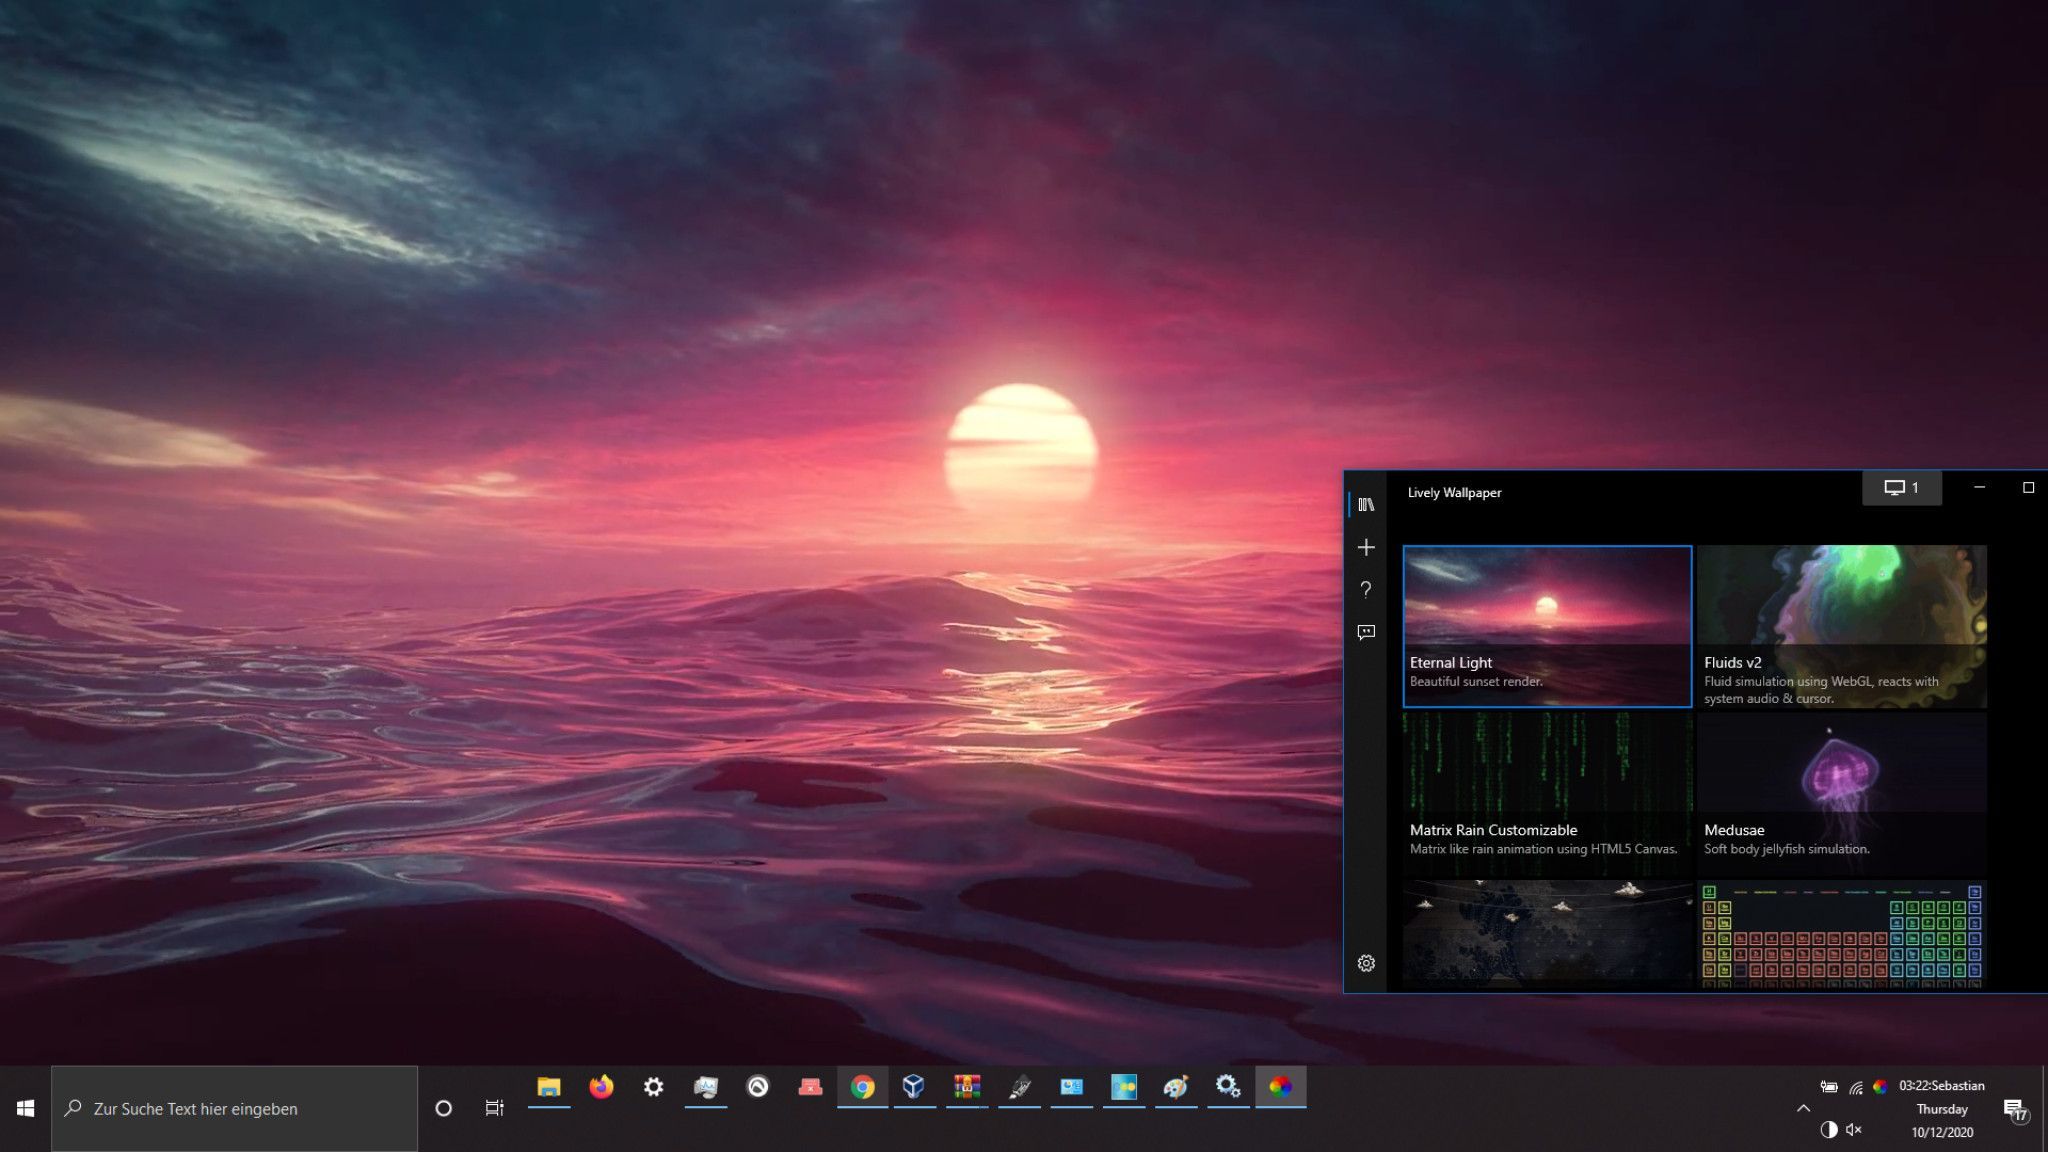  Beste PC Hintergrundbild 2048x1152. Windows 10 Design: Die Besten Tipps Und Tools